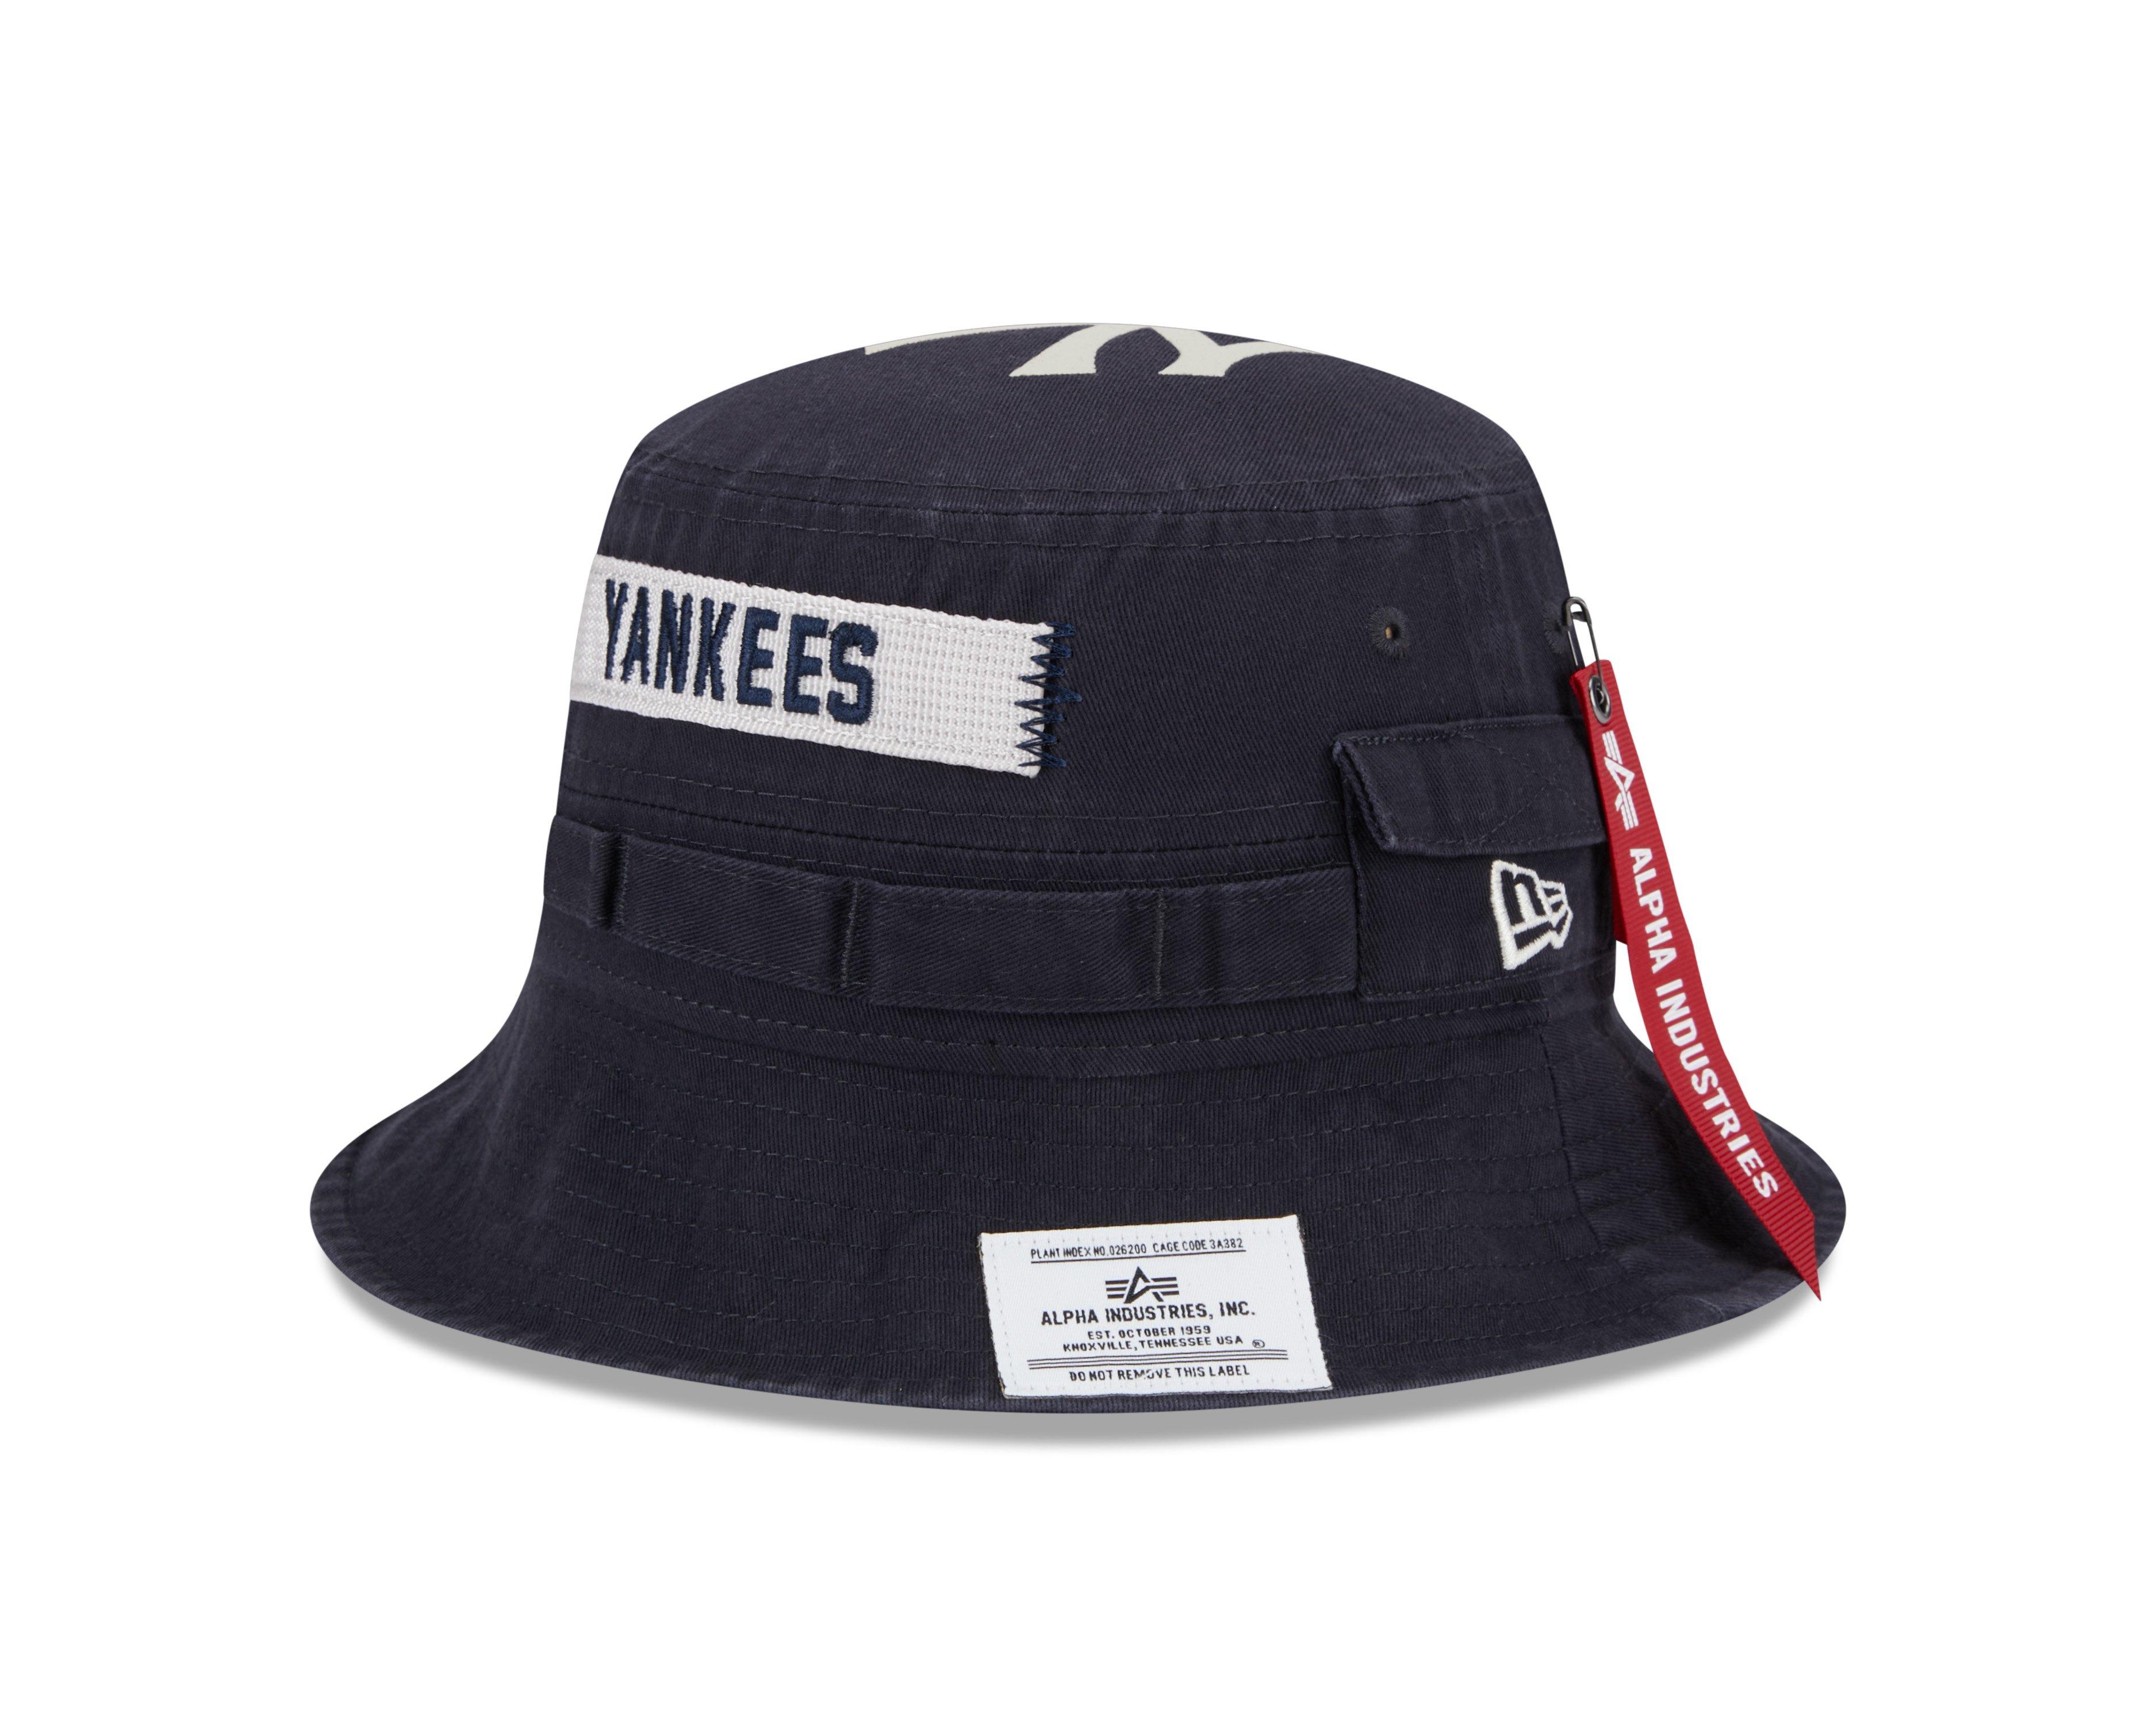 Ny yankees bucket hat - New Era - Men